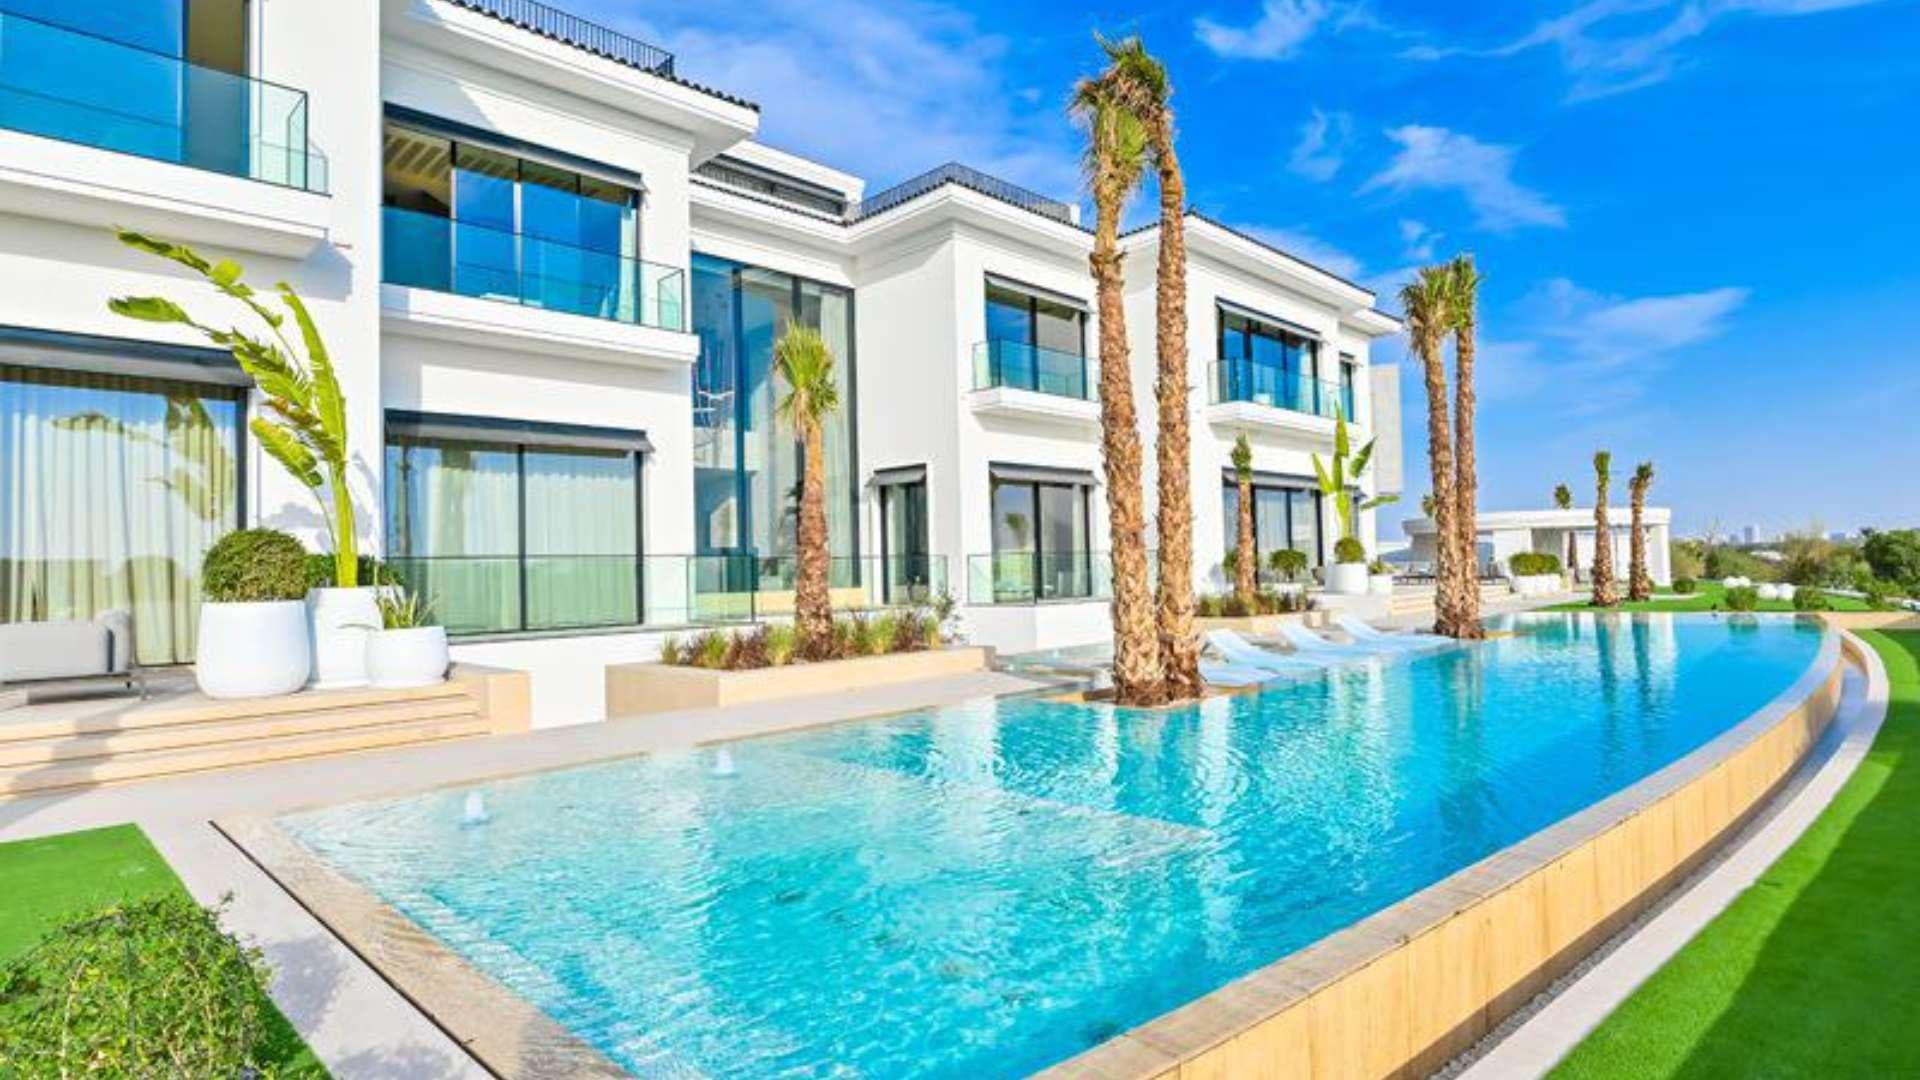 7 Bedroom Villa For Sale Dubai Hills Lp20693 1f93f3409b9ac400.jpg